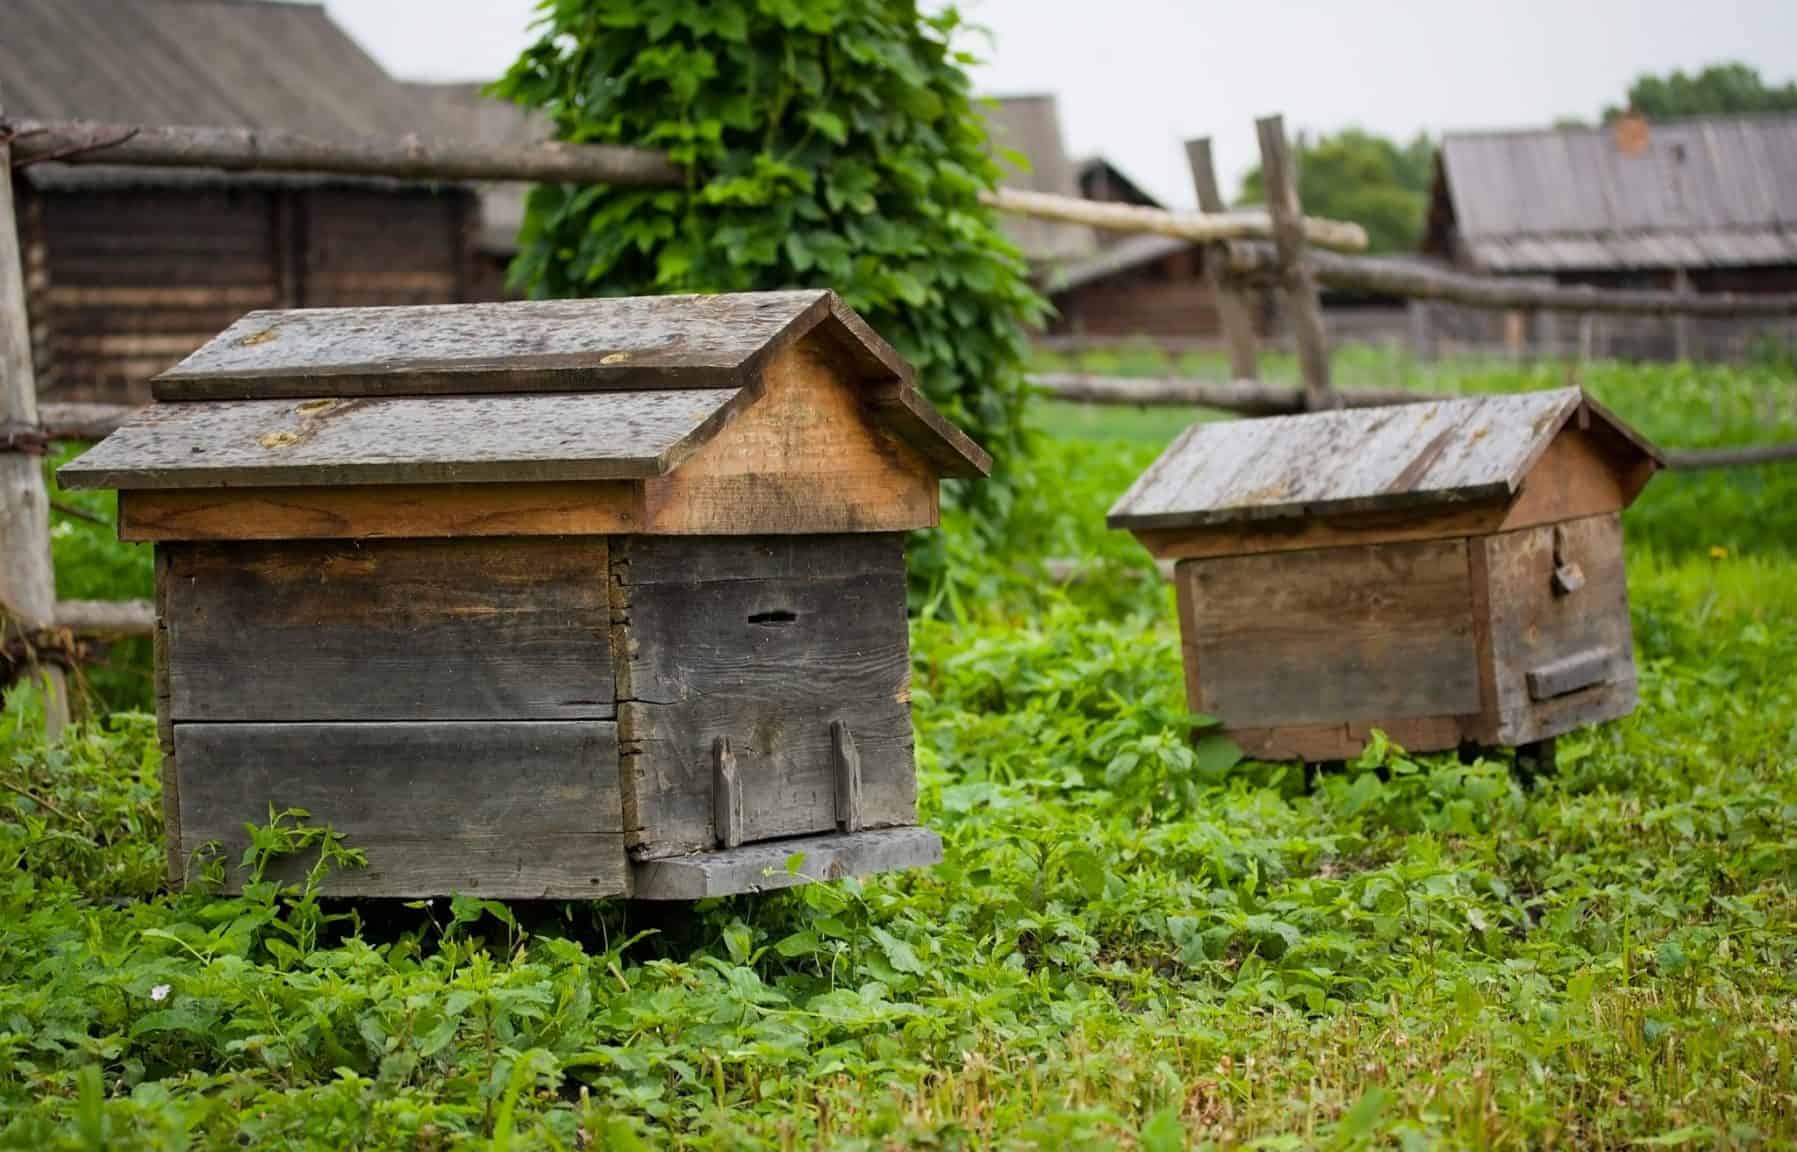 Vintage beehive